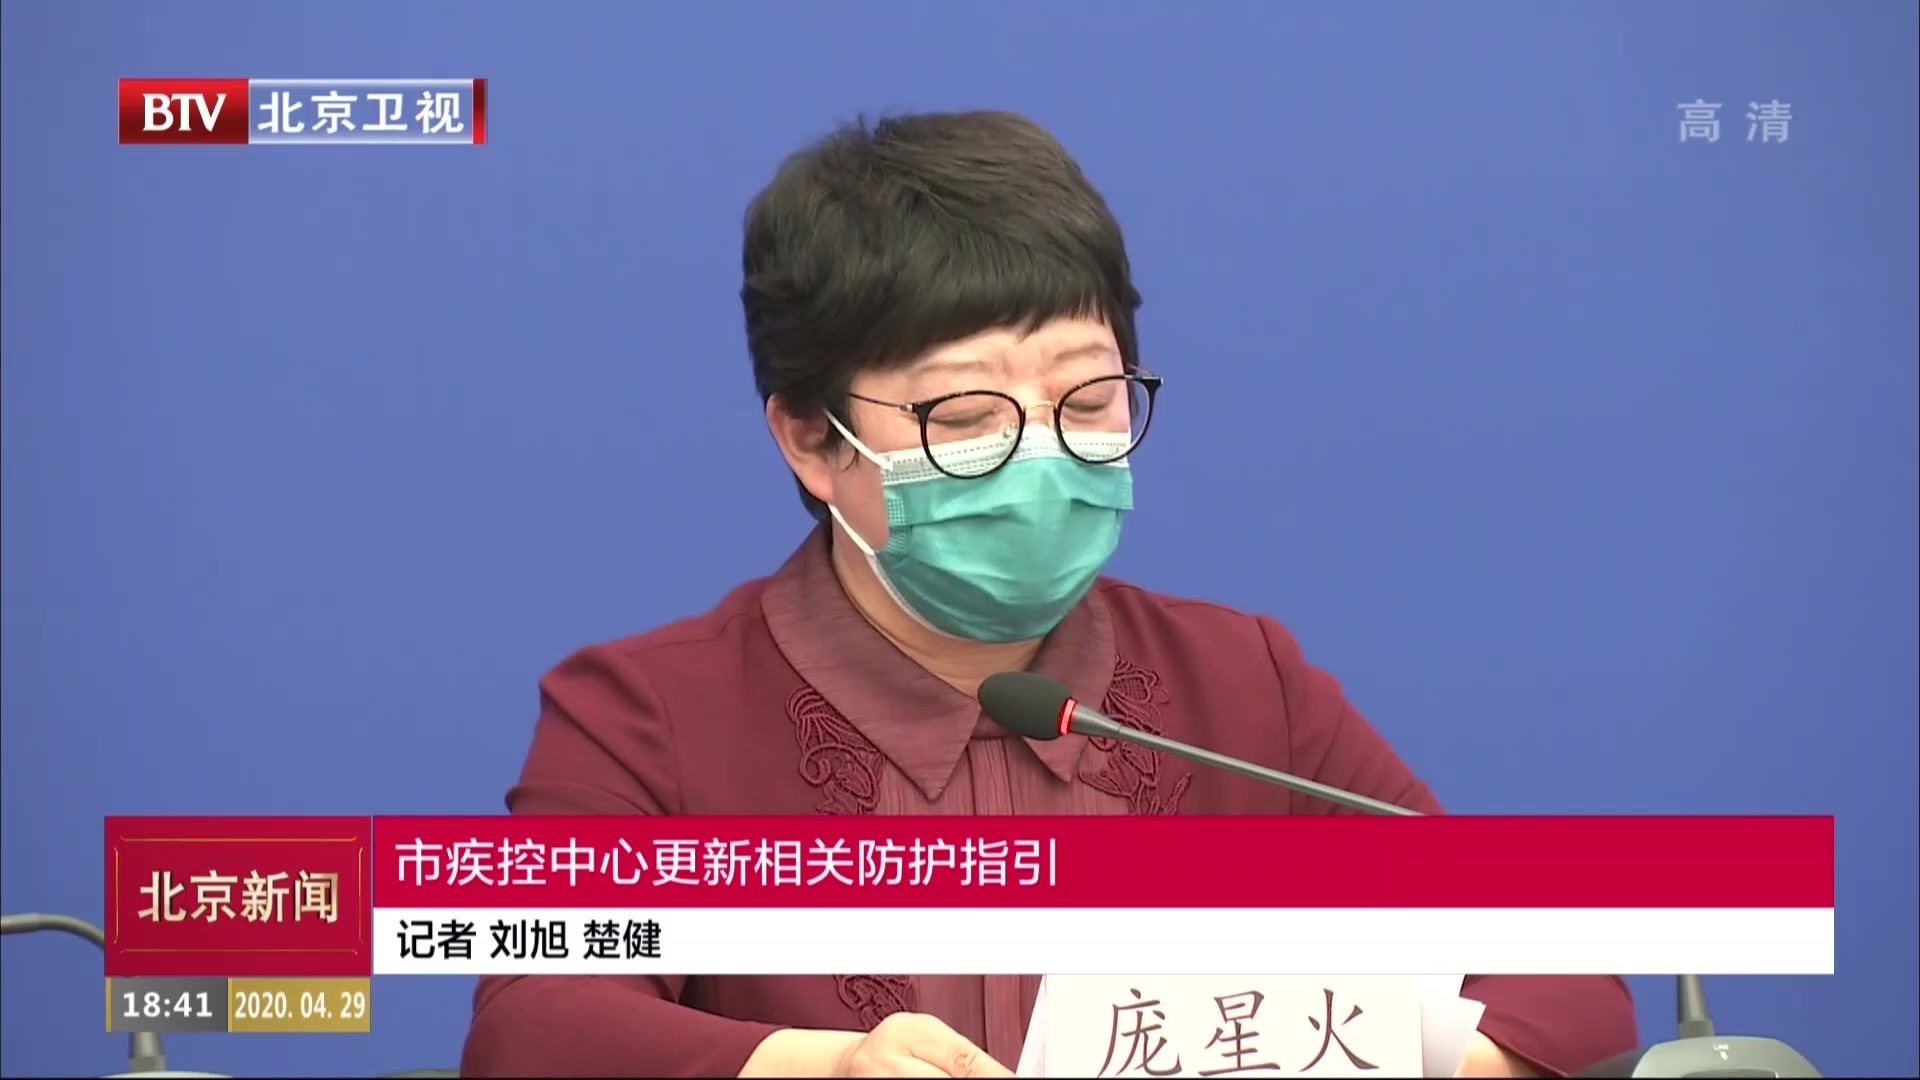 北京市疾控中心更新相关防护指引